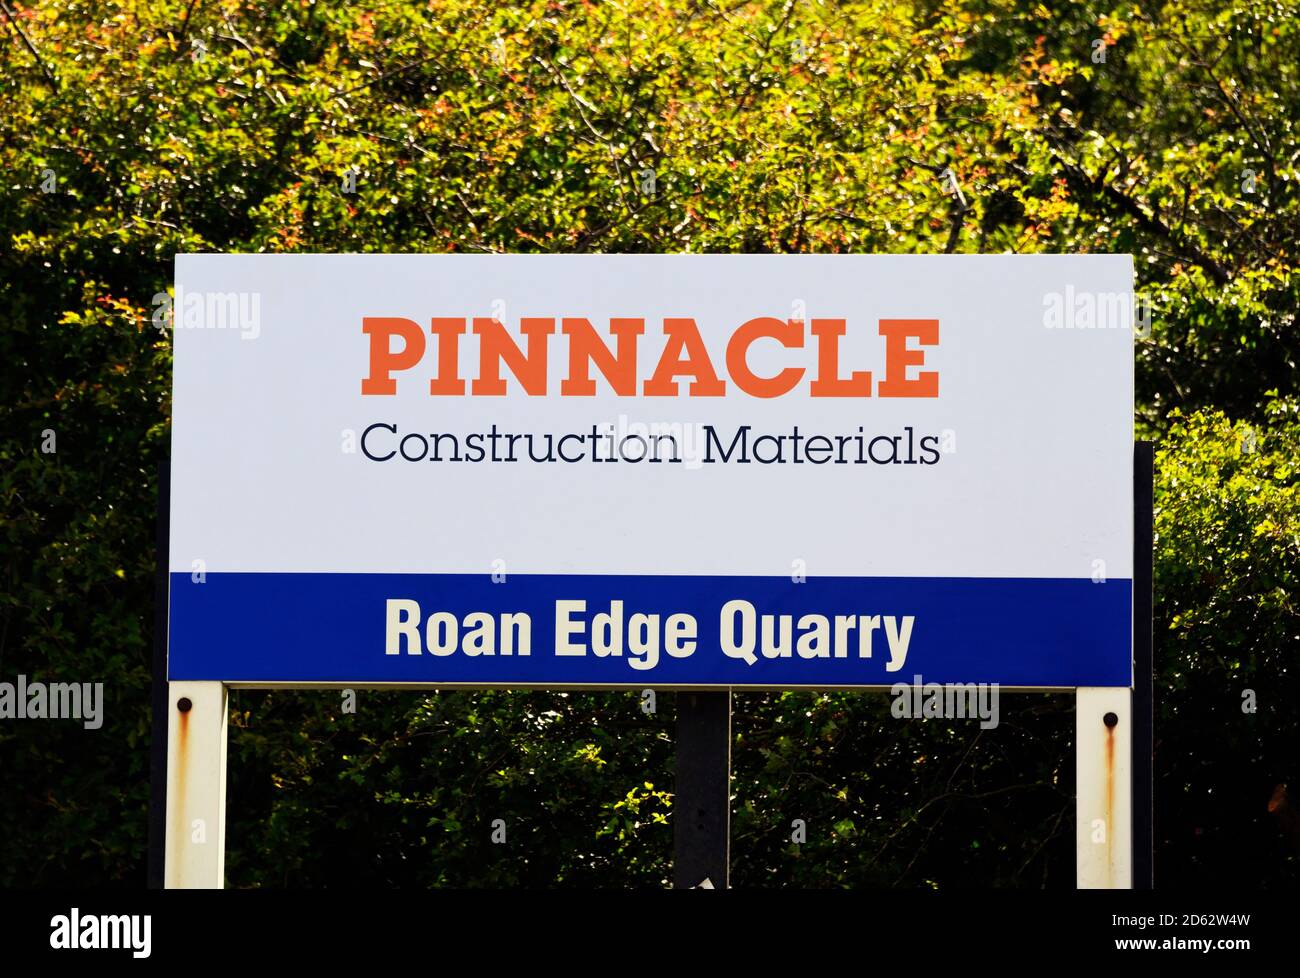 Cartello. Materiali da costruzione Pinnacle. Roan Edge Quarry, Cemex Regno Unito, New Hutton, Kendal, Cumbria, Inghilterra, Regno Unito, Europa. Foto Stock